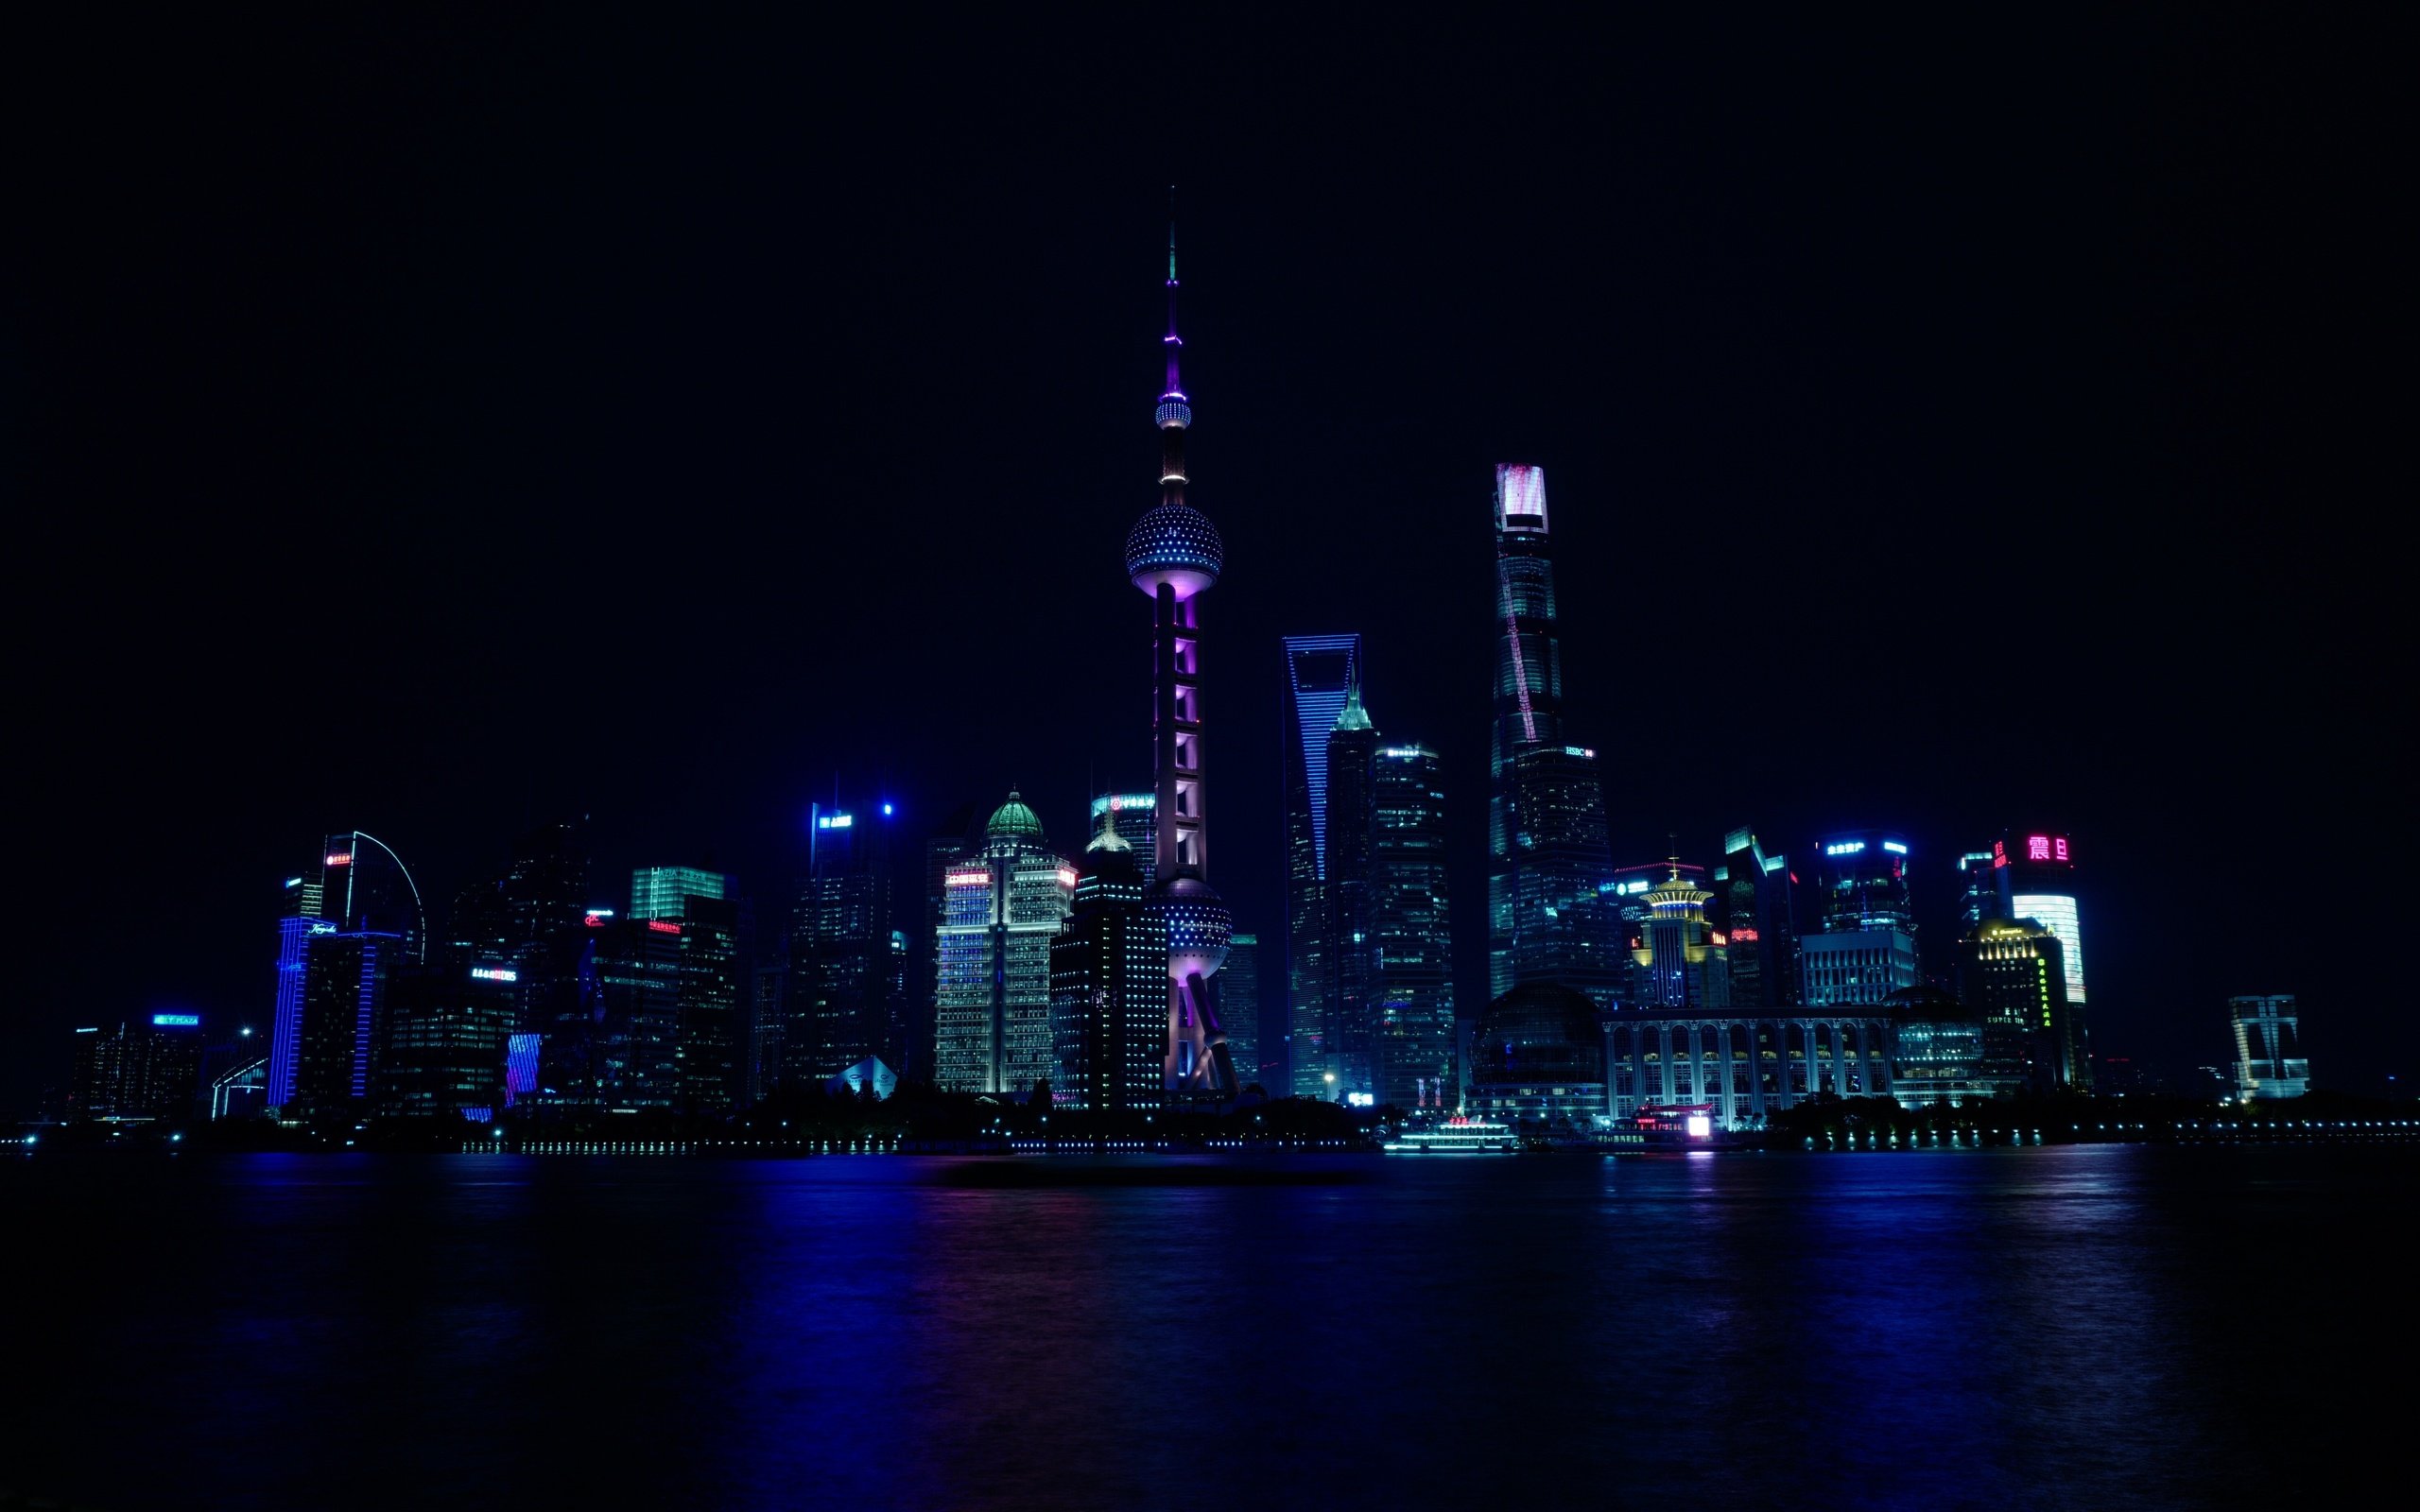 Шанхай ночью